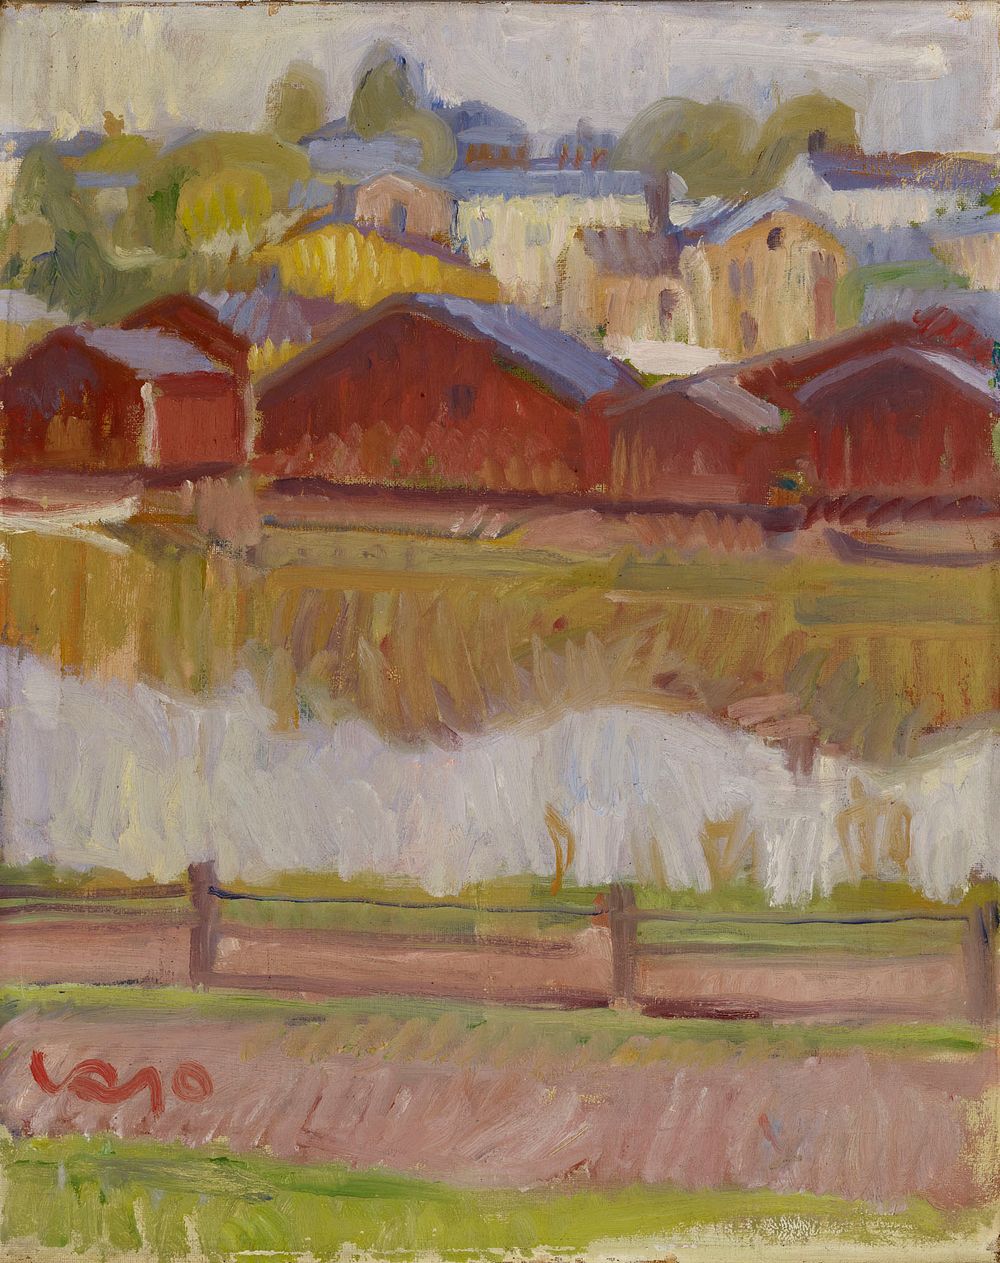 Riverside sheds in porvoo, 1910, Valle Rosenberg